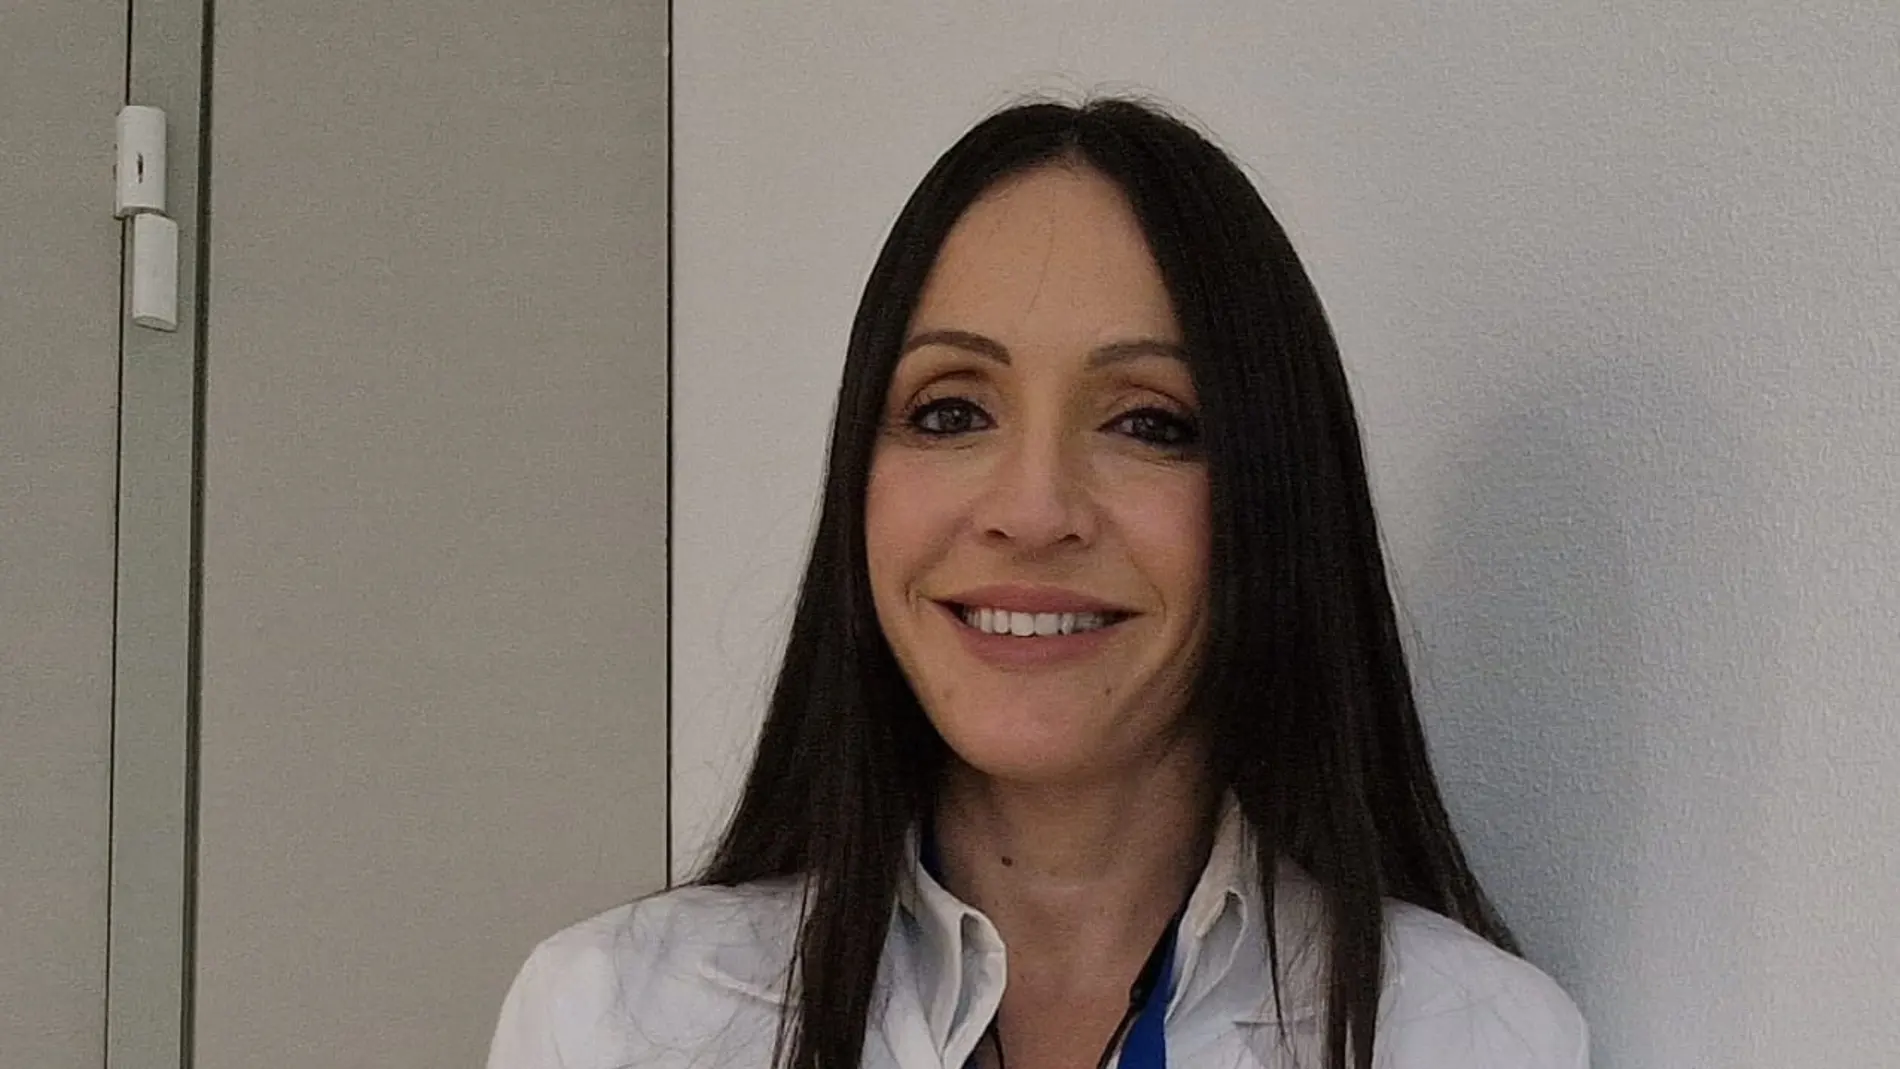 Dra. Mariana Bastos